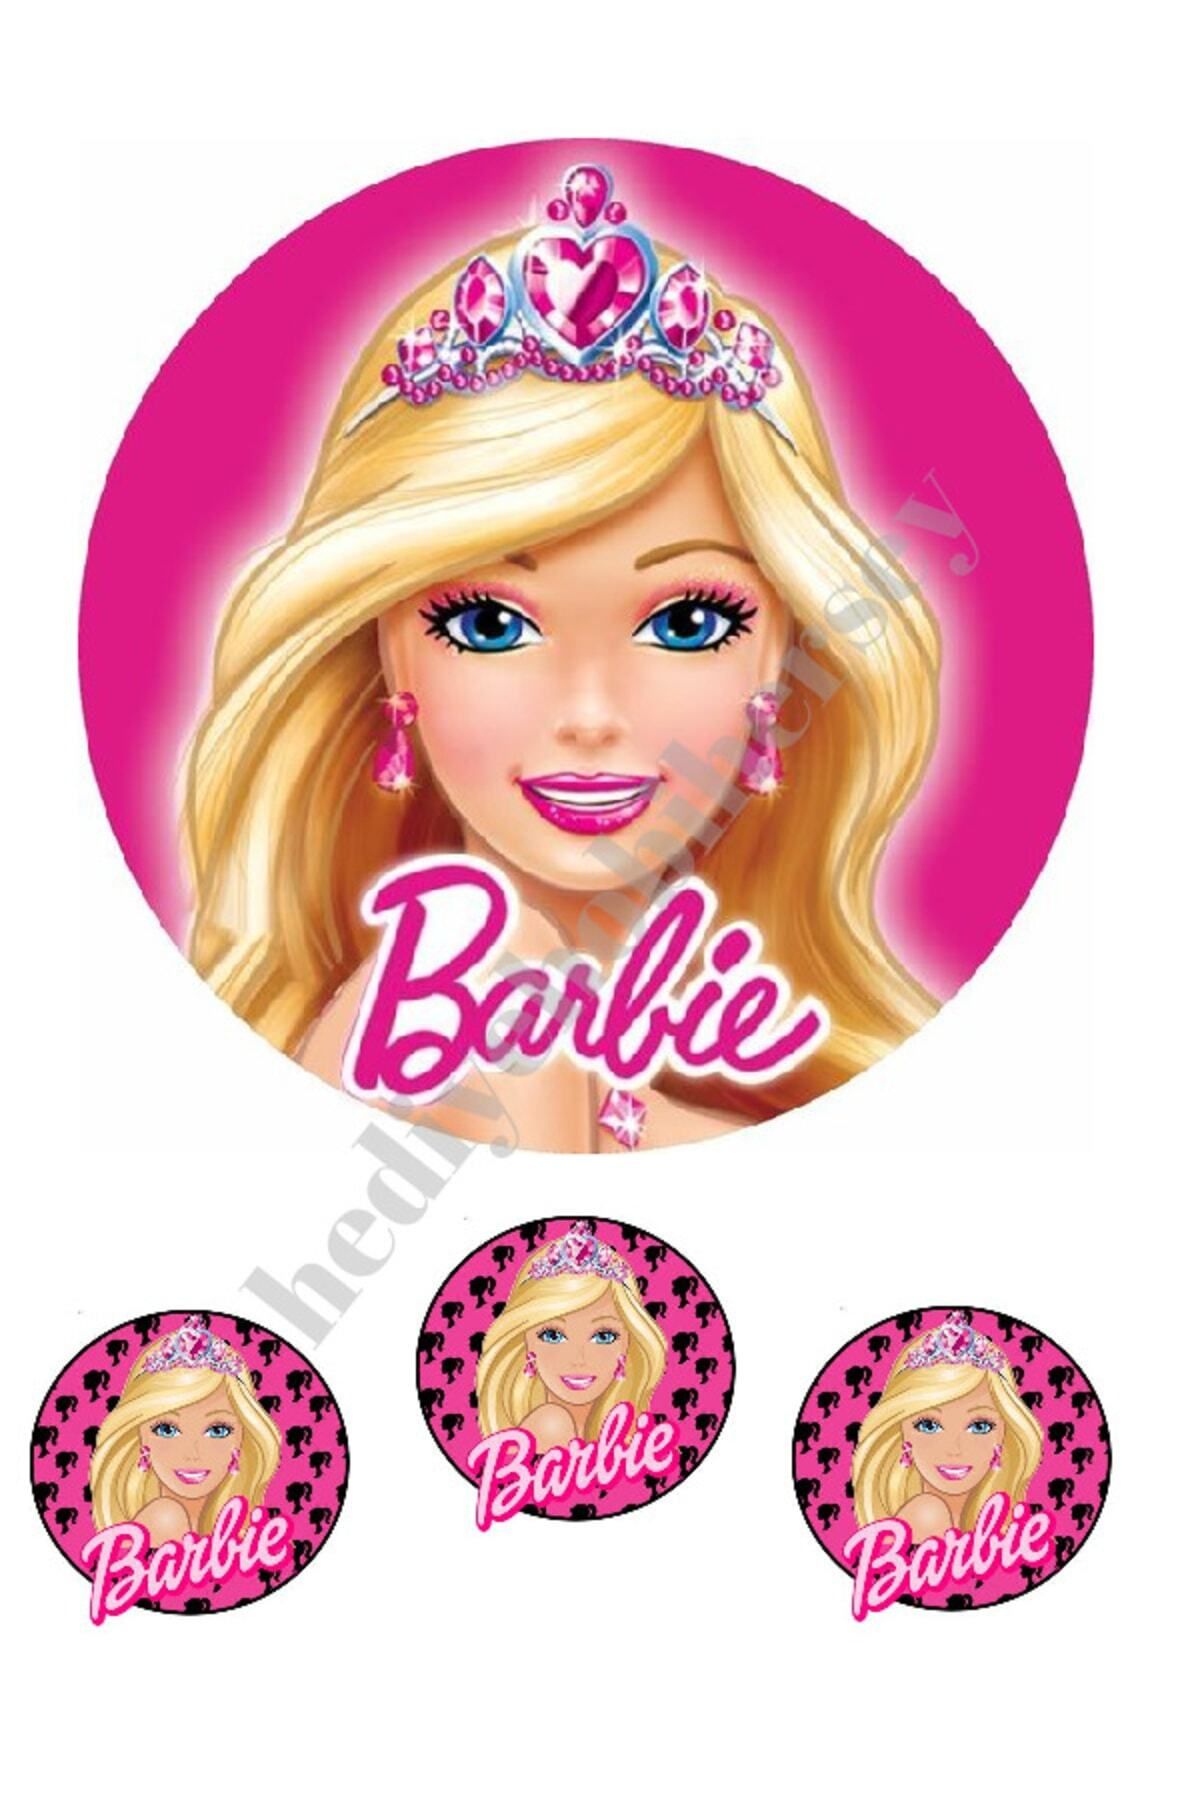 hediyehobihersey Barbie Yenilebilir Kağıt Pasta Resmi Kurabiye Baskısı Pirinç Kağıdı Pasta Kurabiye Baskısı